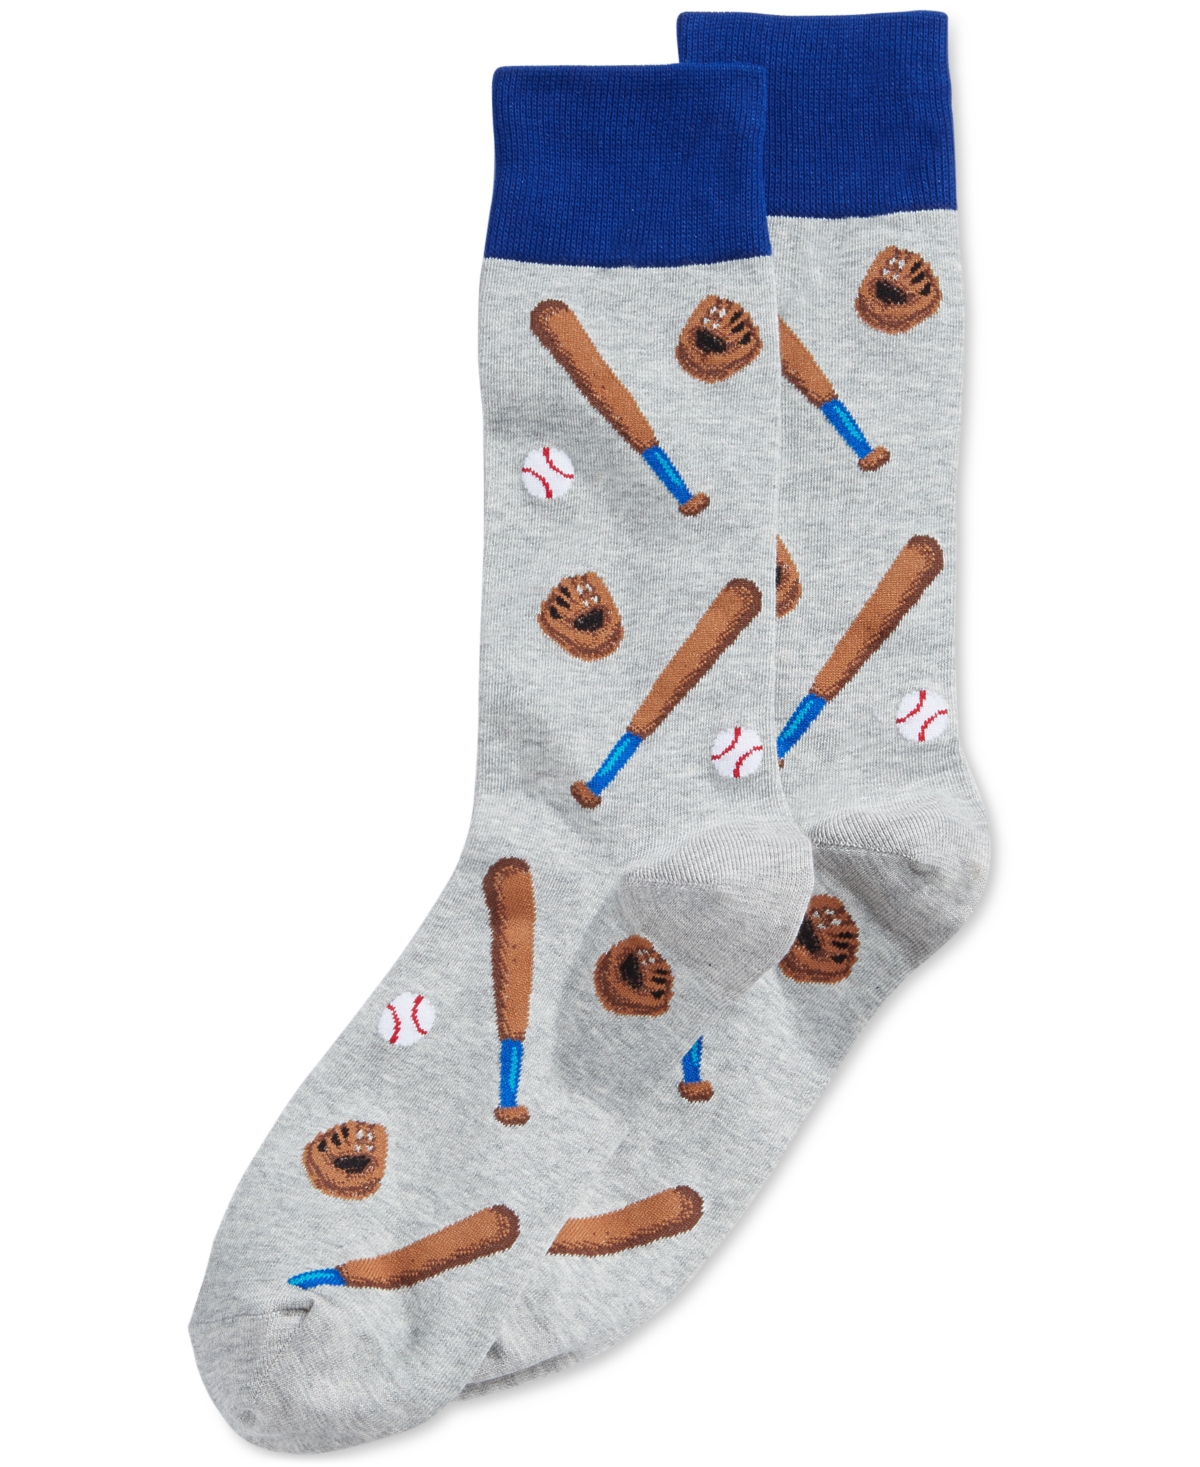 Hot Sox Men's Socks, Baseball Design